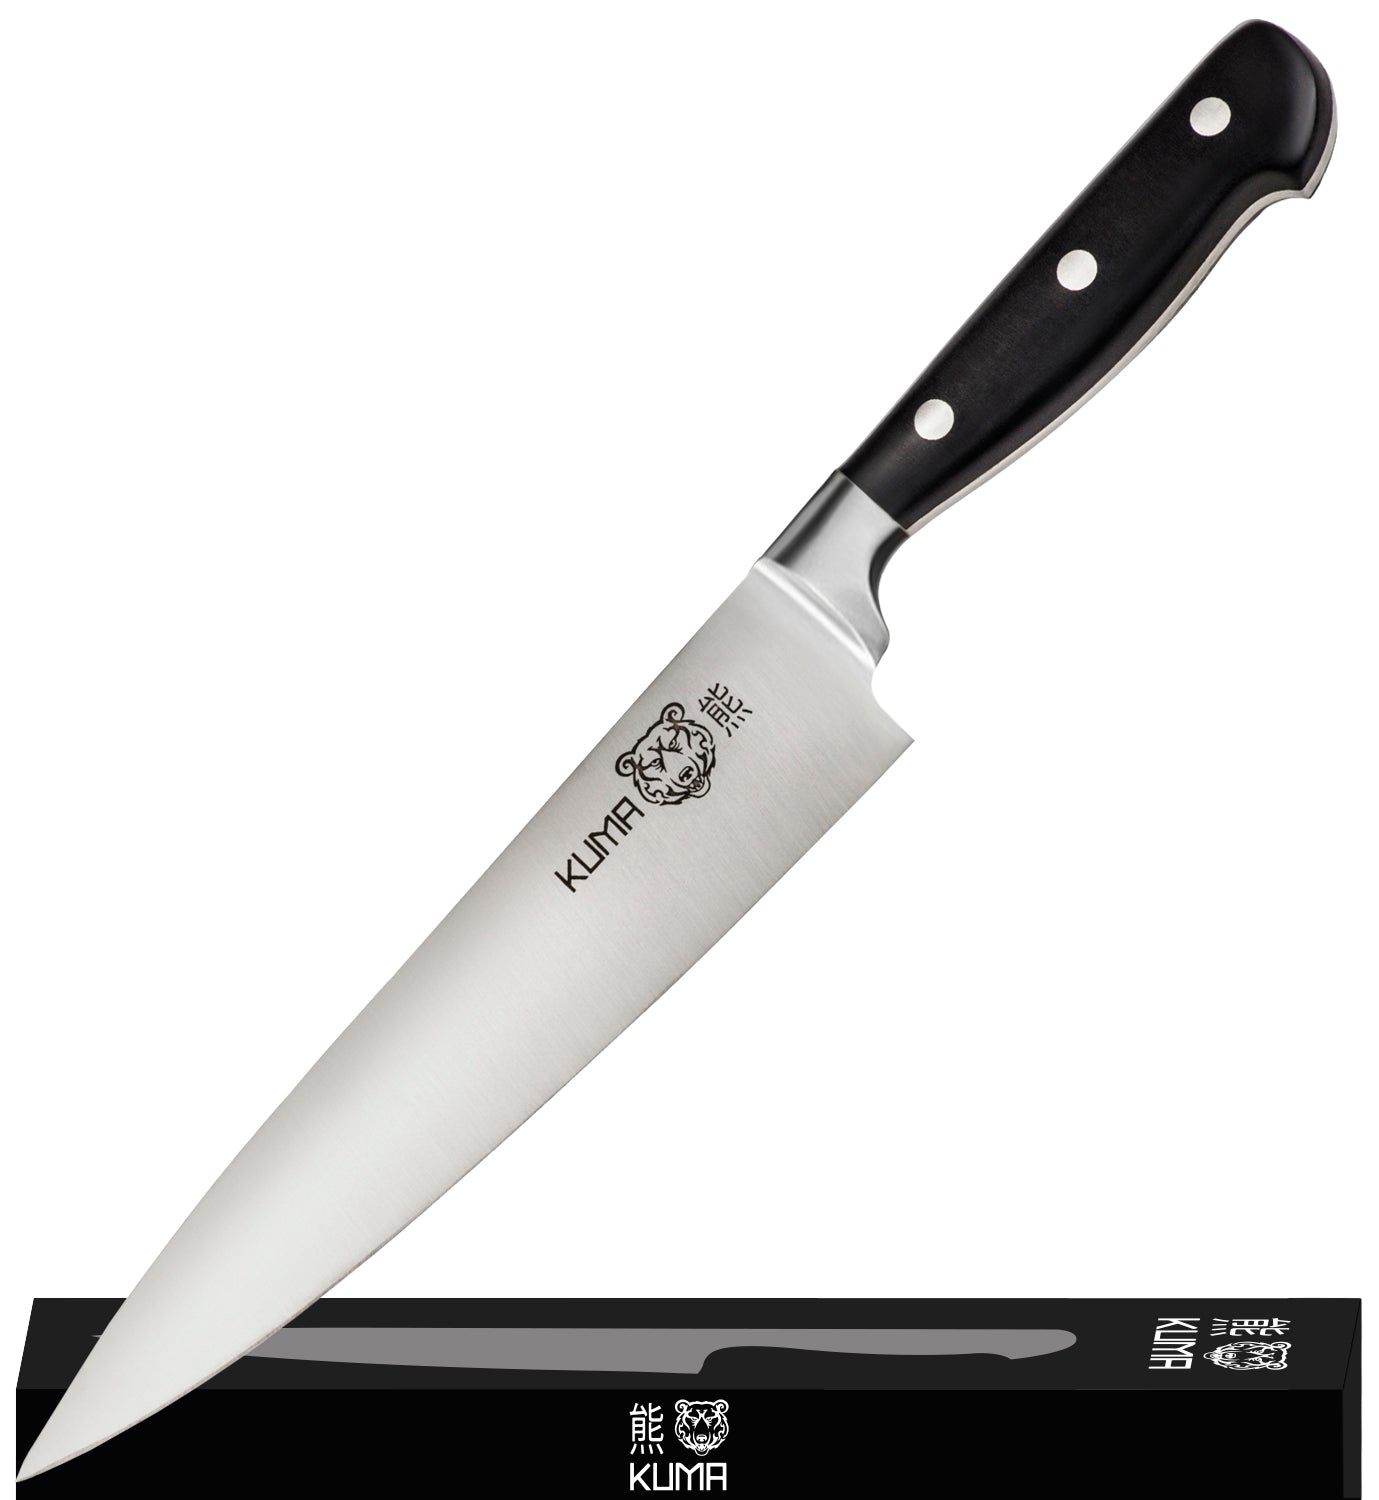 https://kumaknives.com/cdn/shop/products/B07H4KGV82_chef_knife-box.jpg?v=1657280408&width=1445